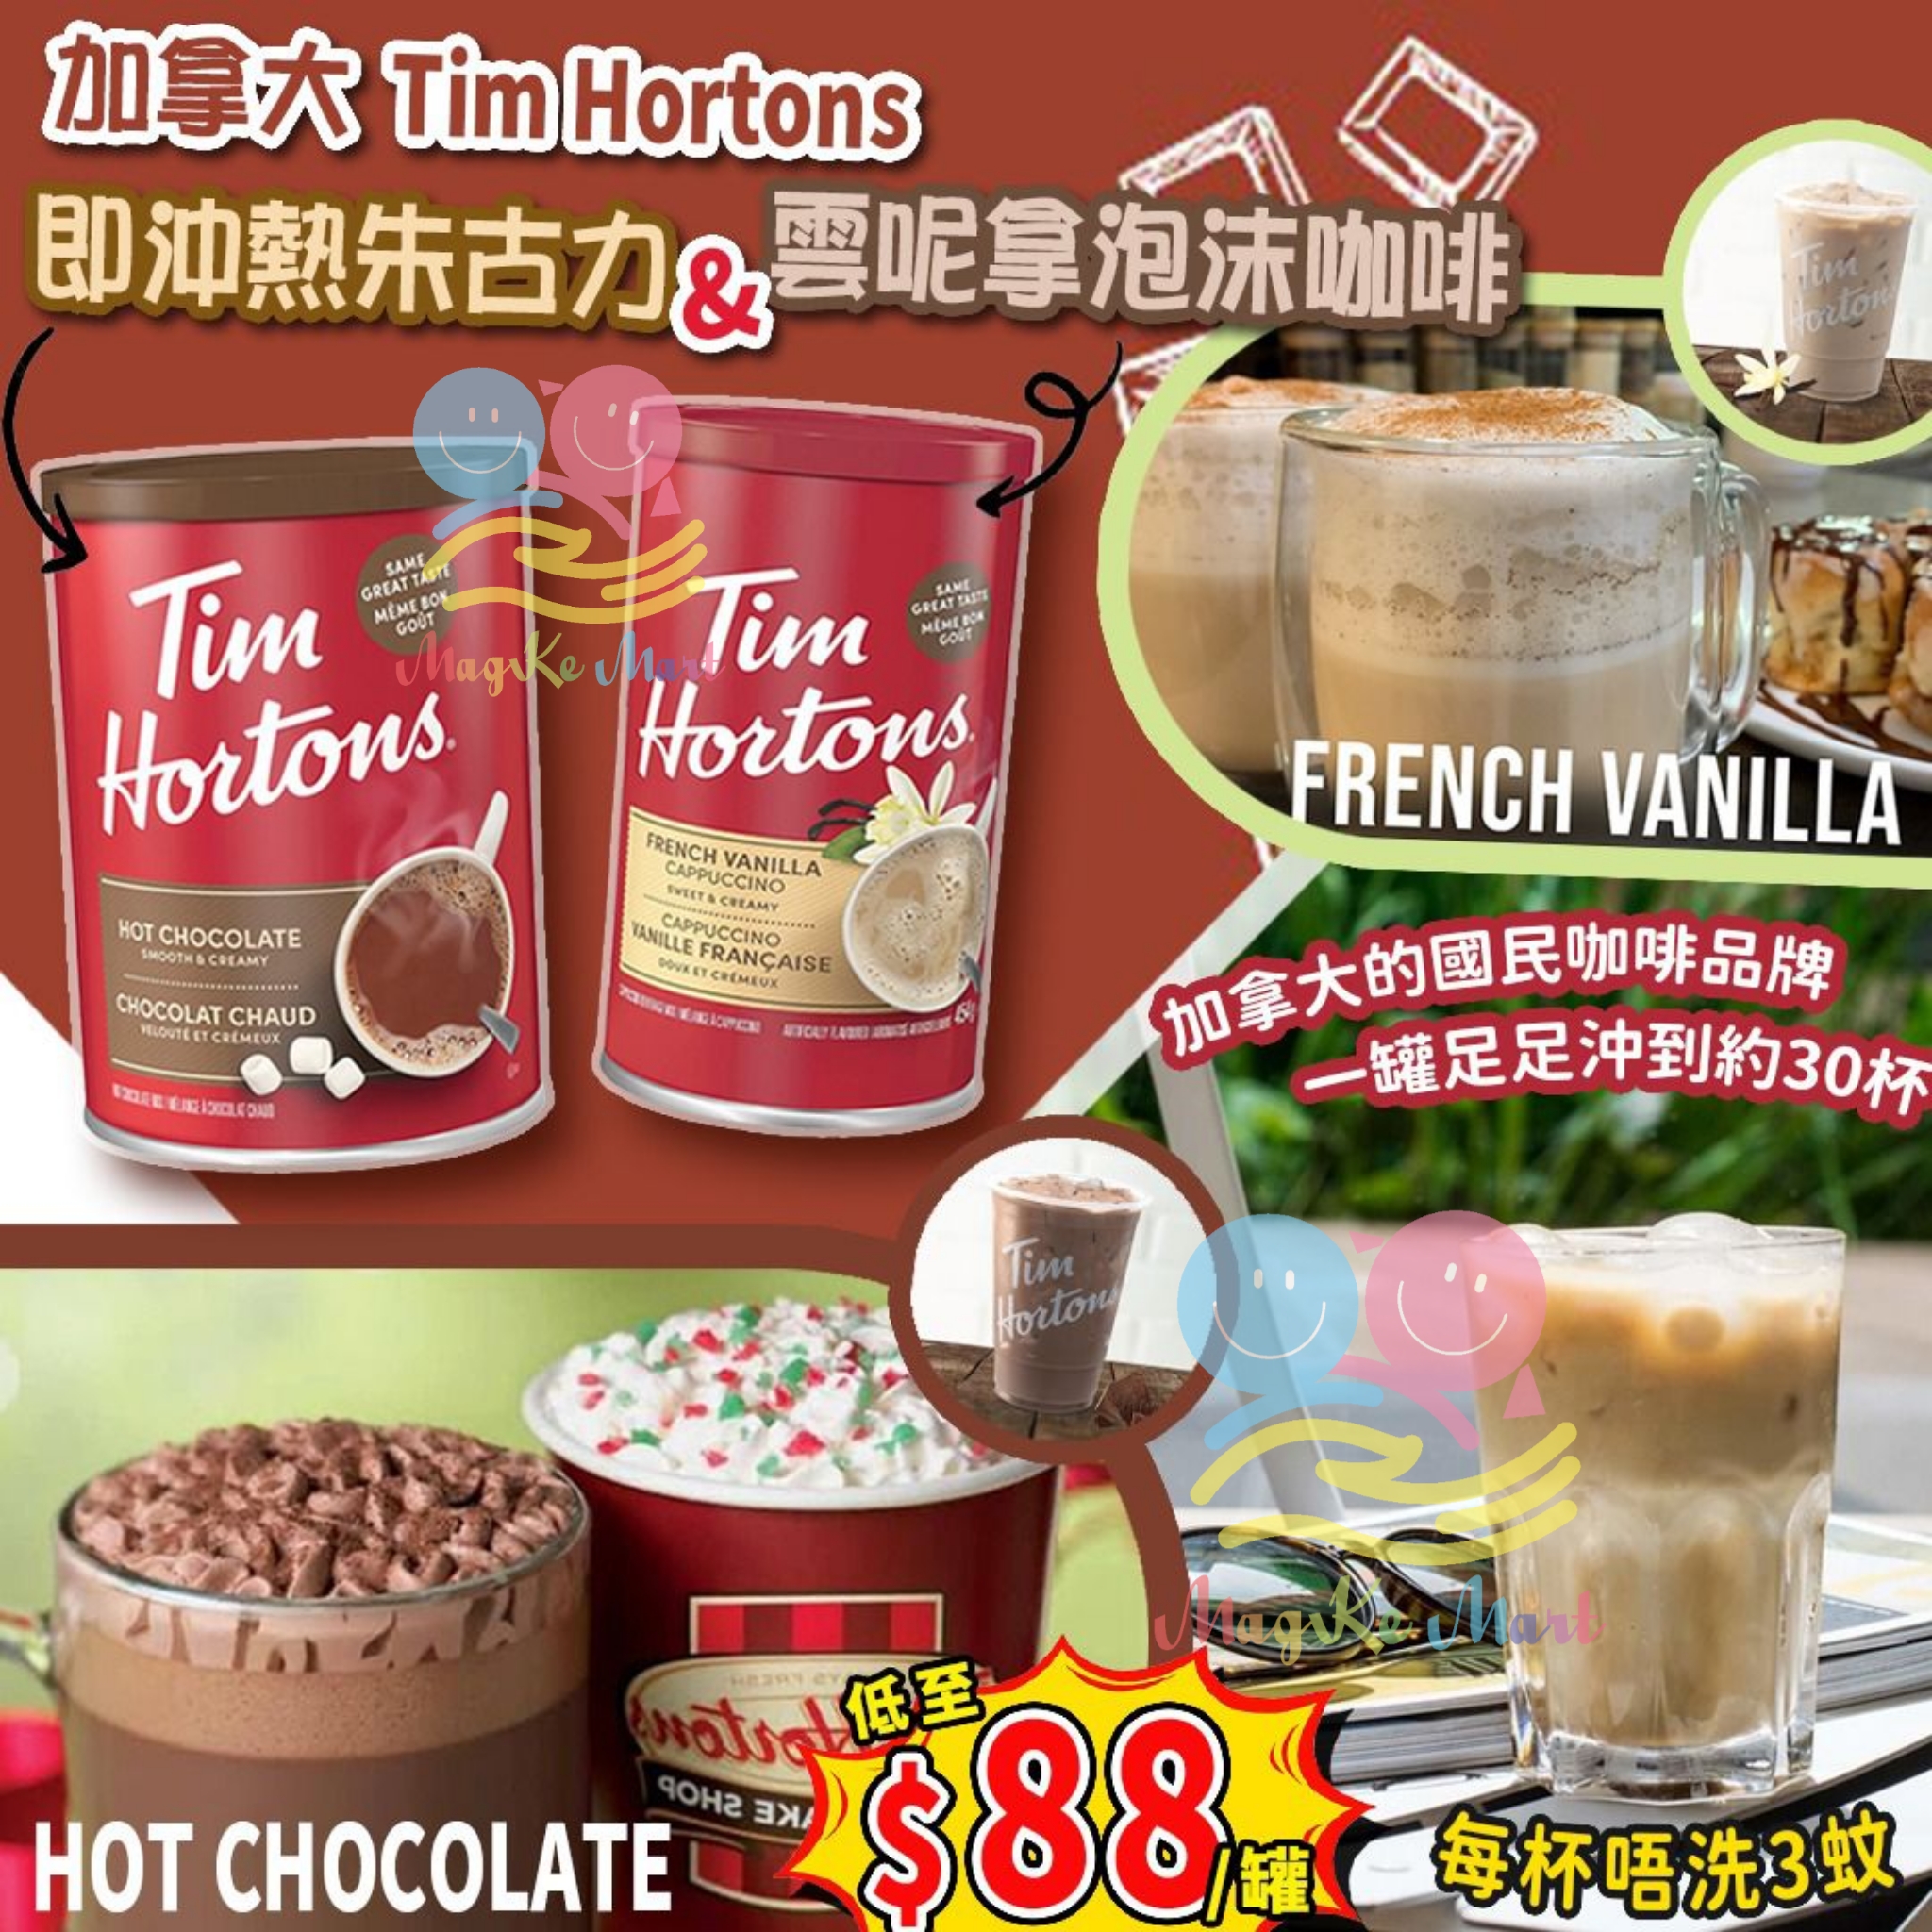 加拿大 Tim Hortons 即沖熱朱古力/泡沫咖啡